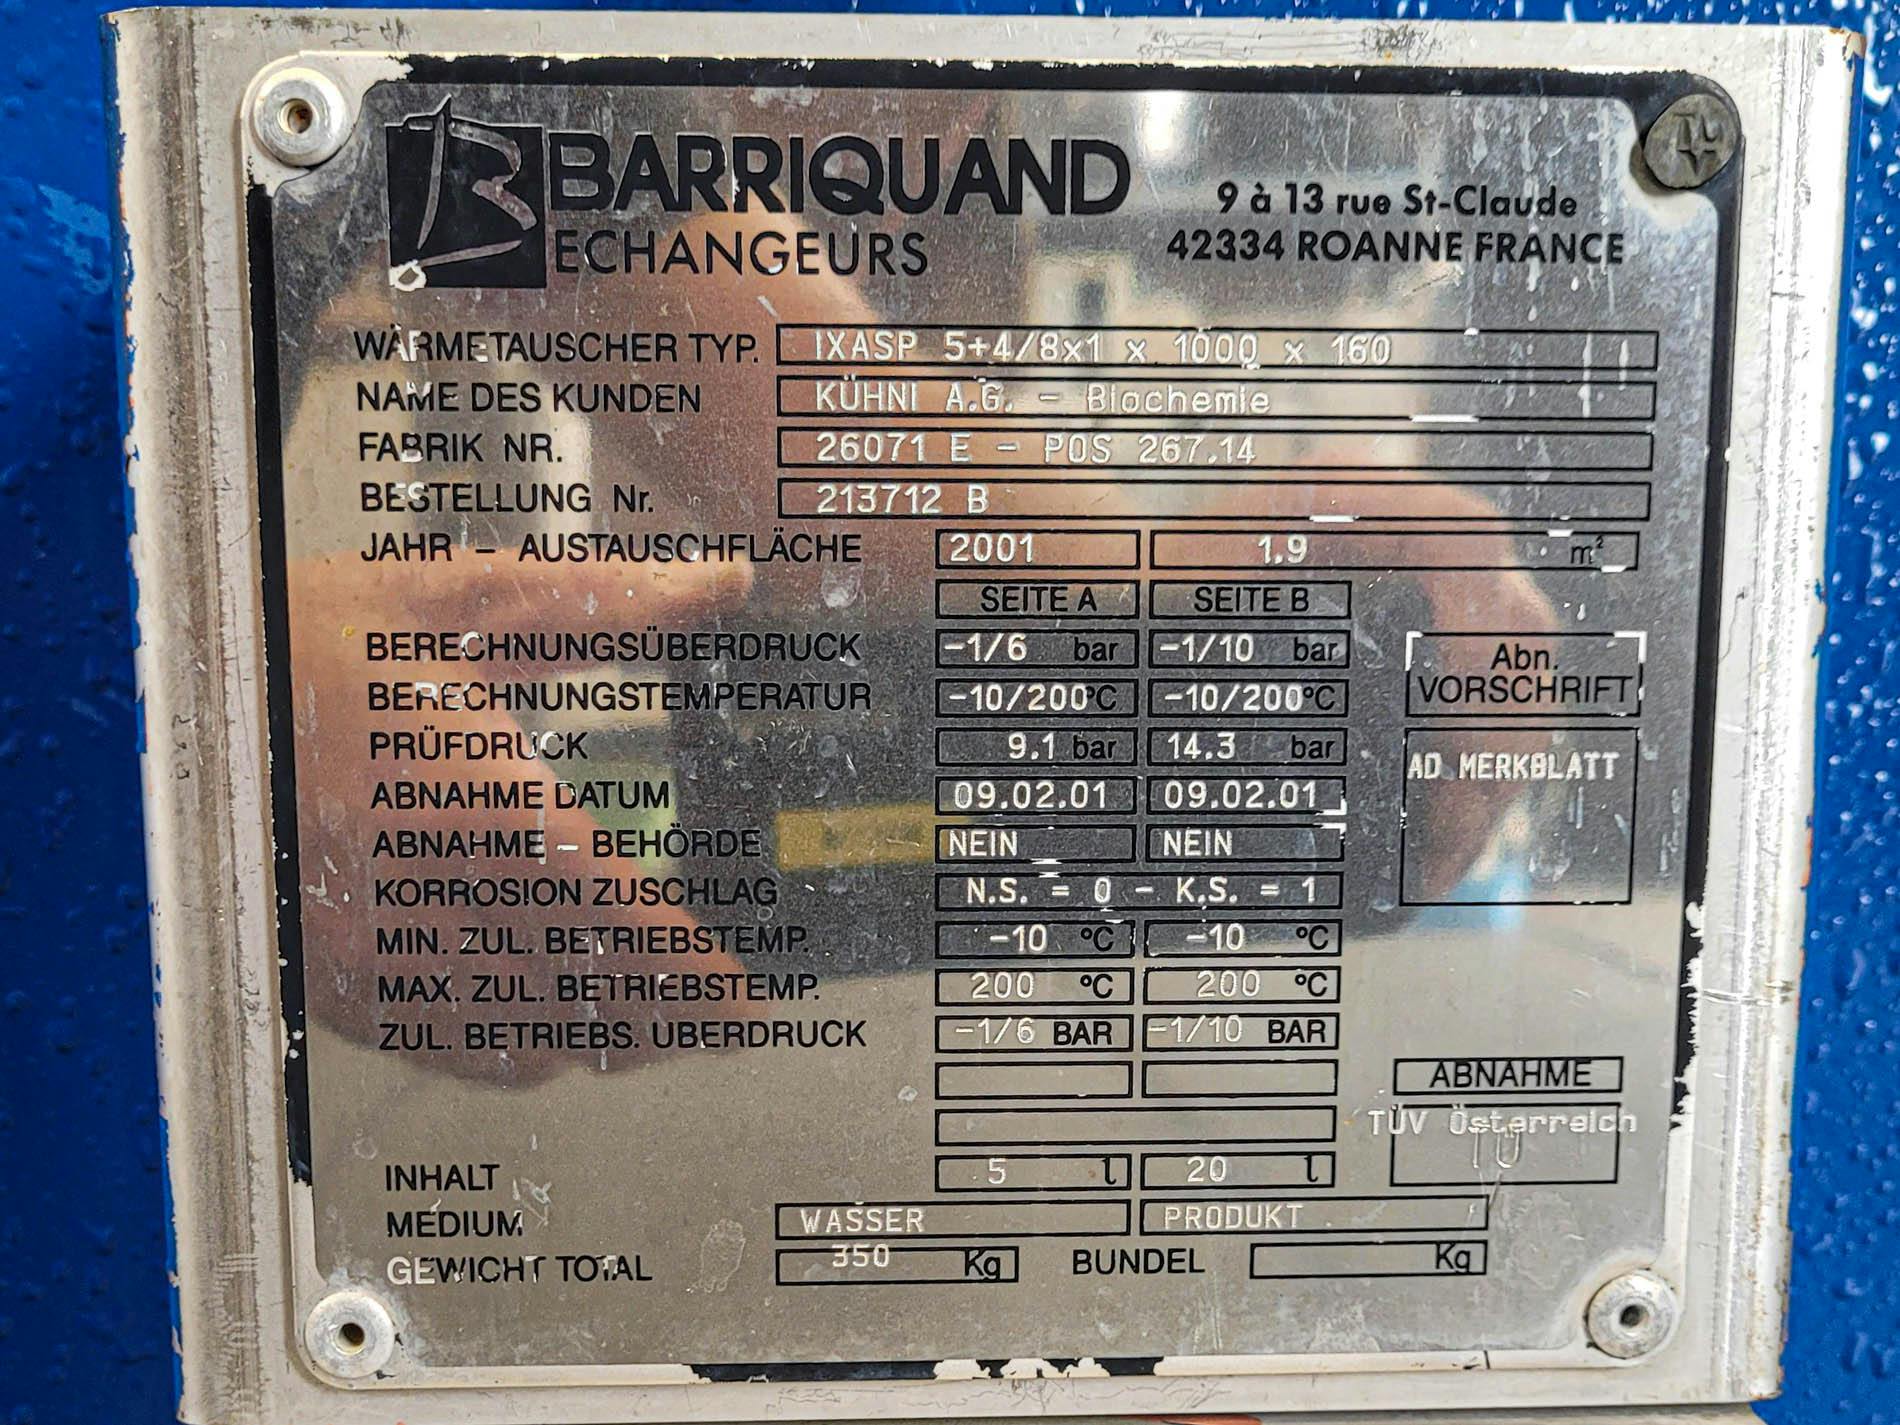 Barriquand IXAP 5+4/8x1 x 1000 x 160 - 1,9 m² - Echangeur de chaleur à plaques - image 9